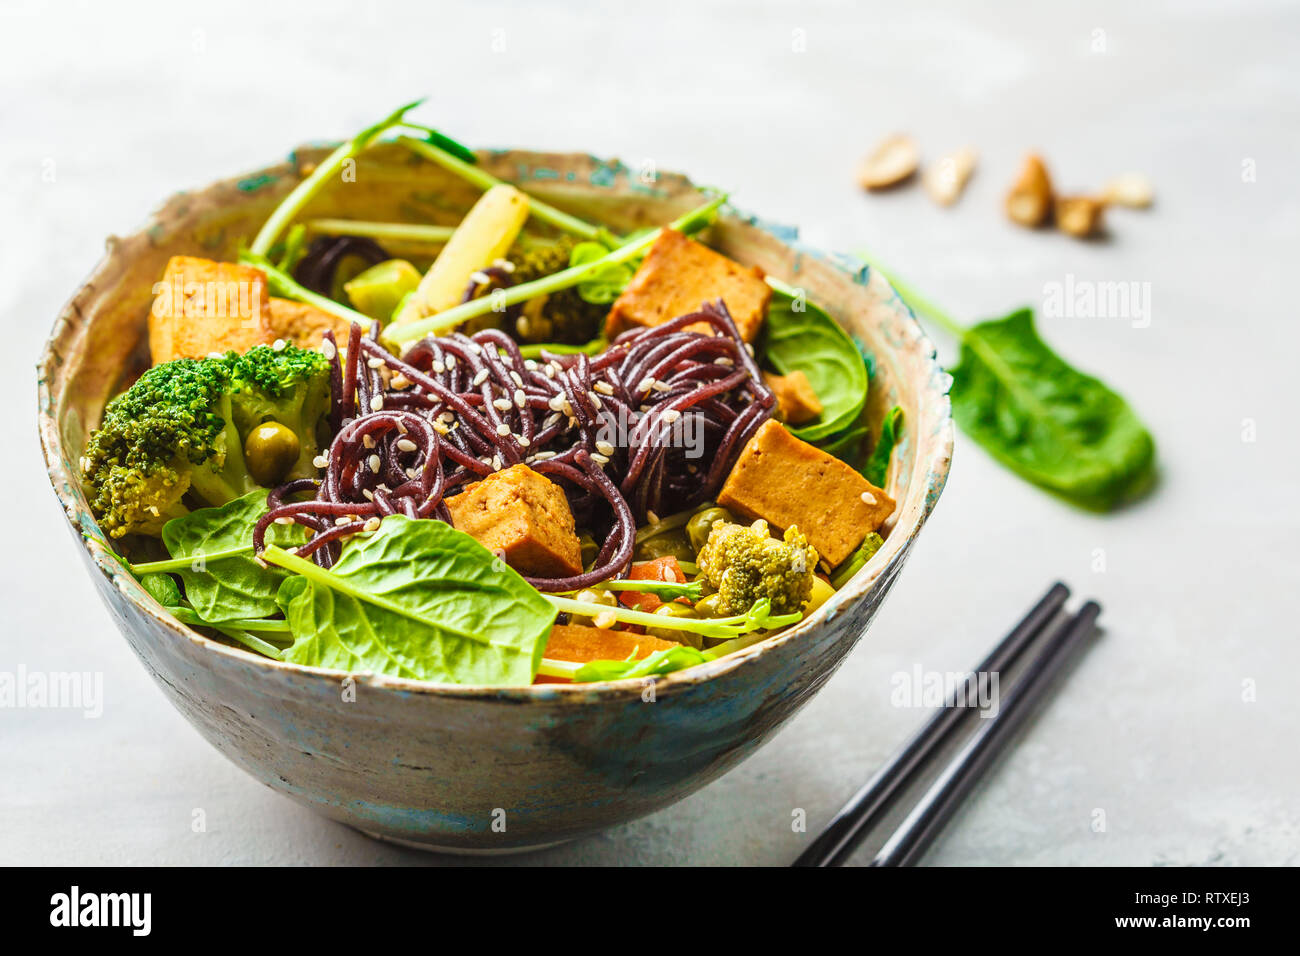 Sauté asiatique végétalien au tofu, nouilles de riz et légumes Banque D'Images